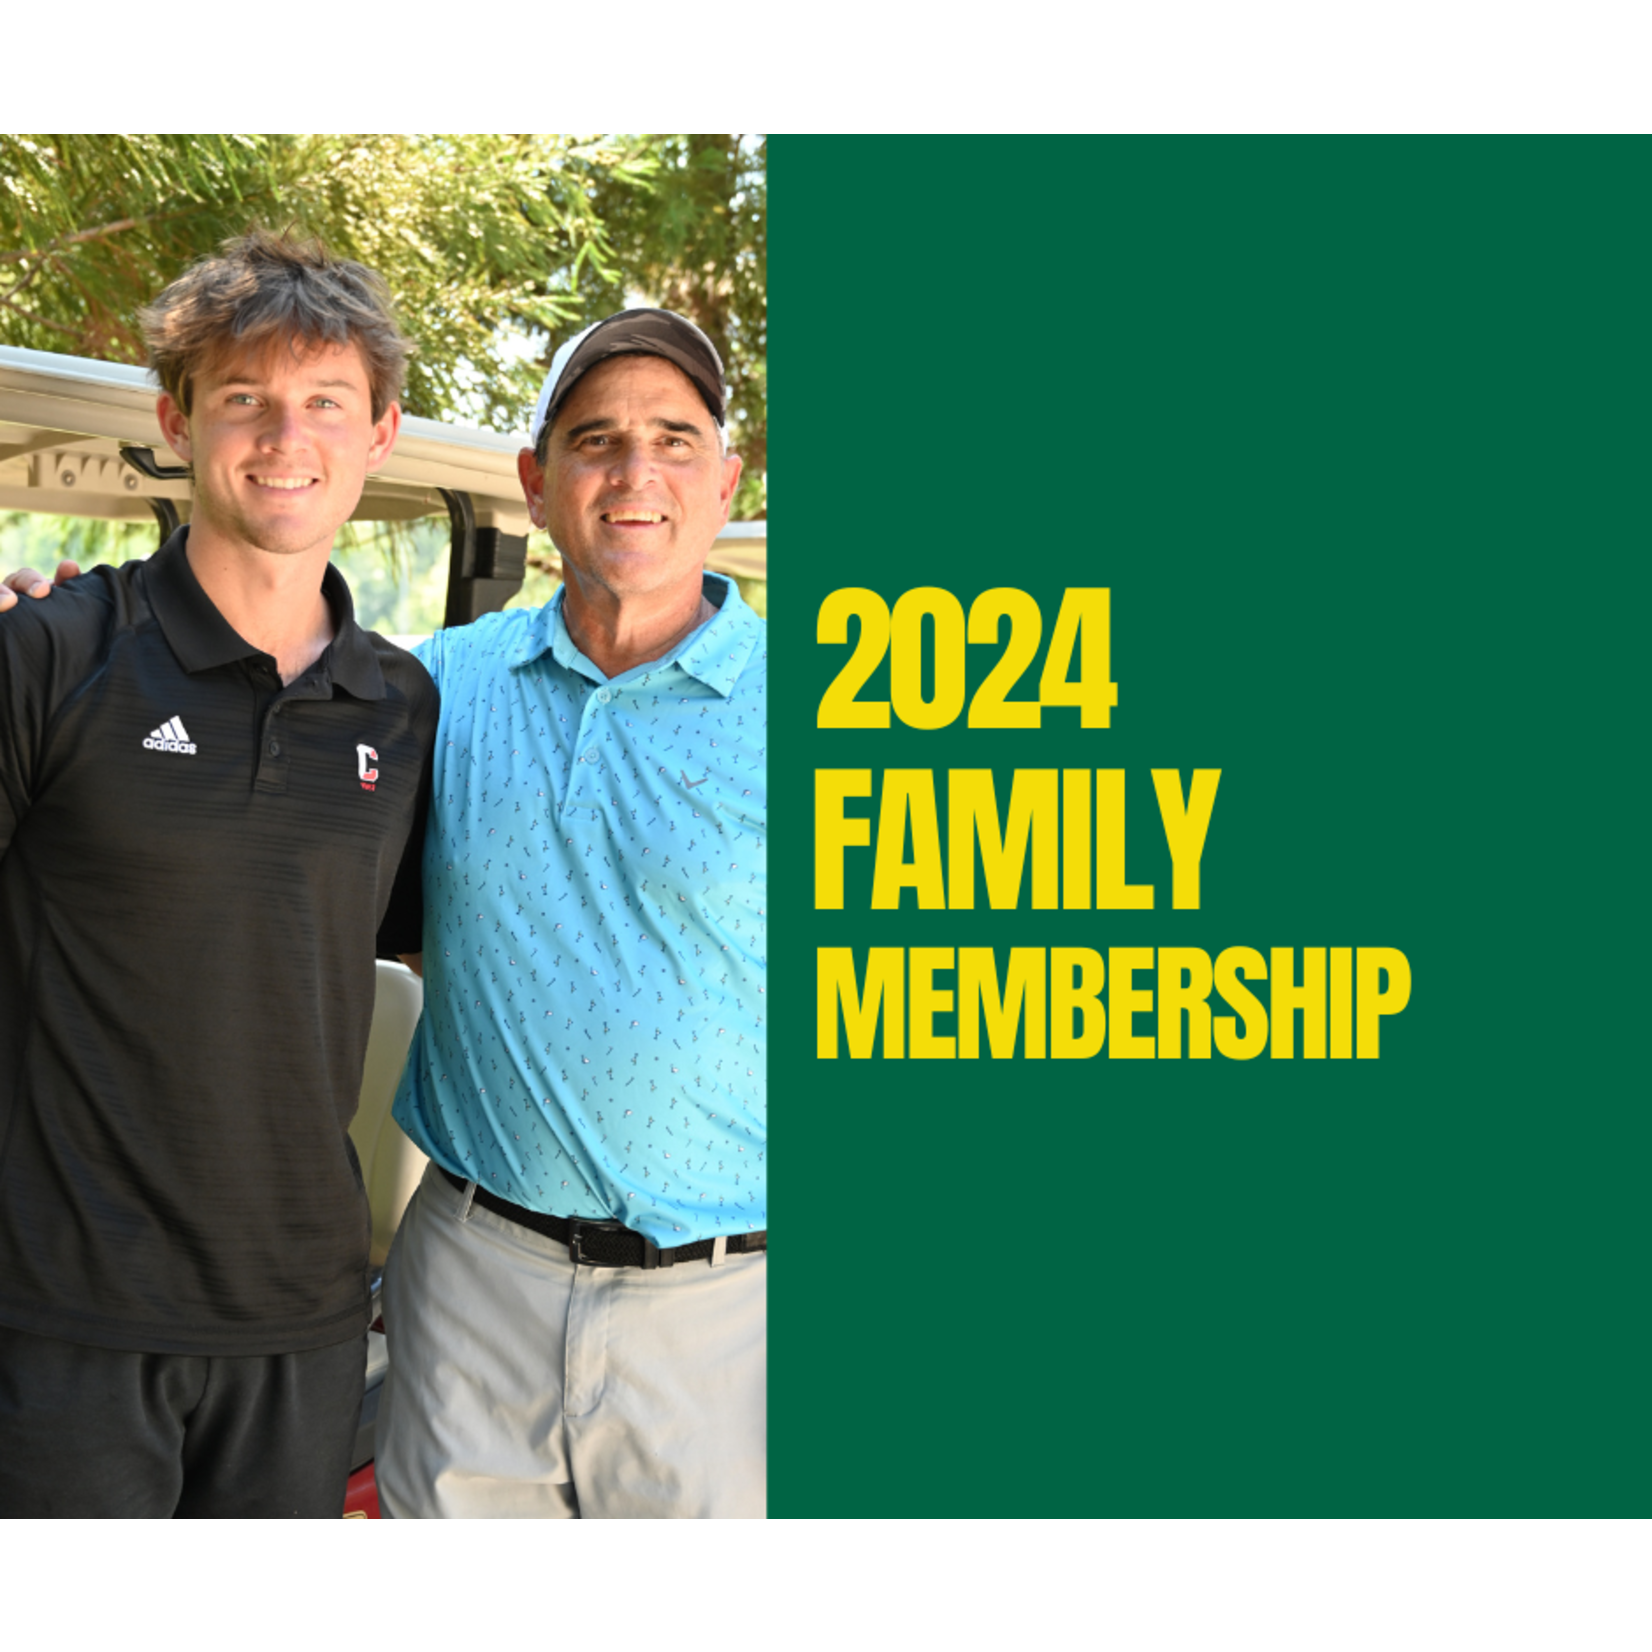 Family Membership - Family Membership